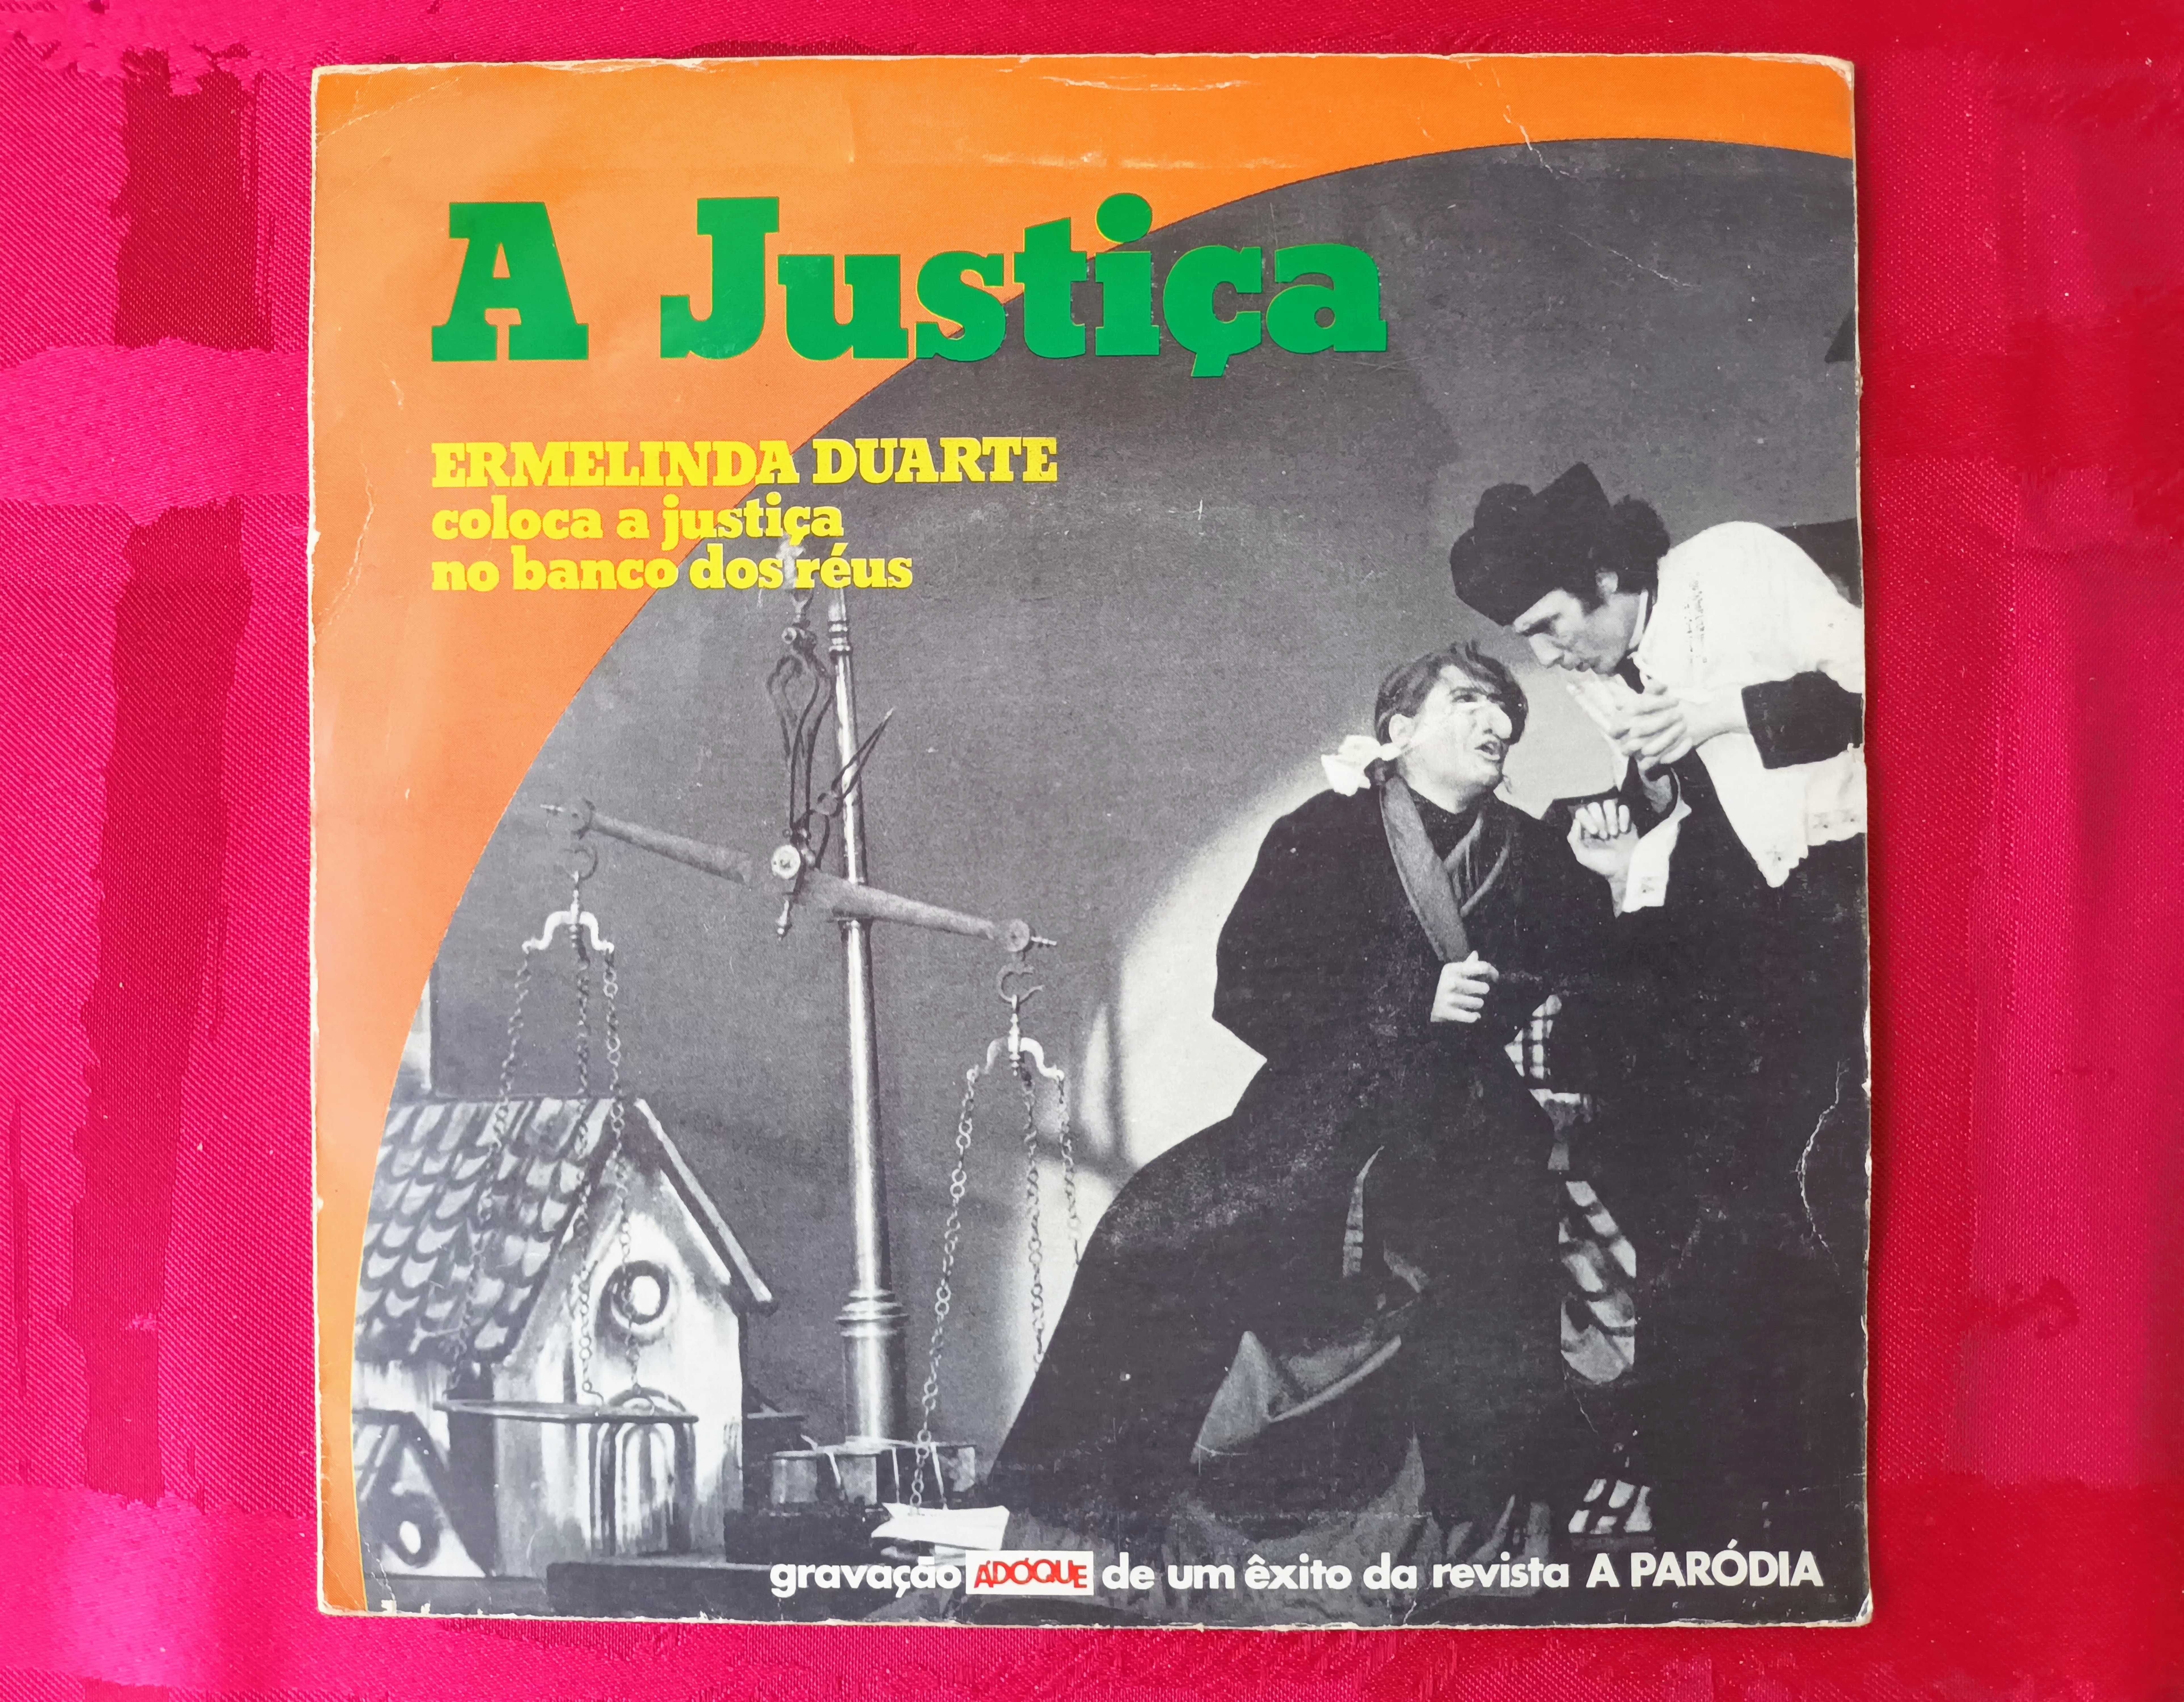 ERMELINDA Duarte - A Justiça